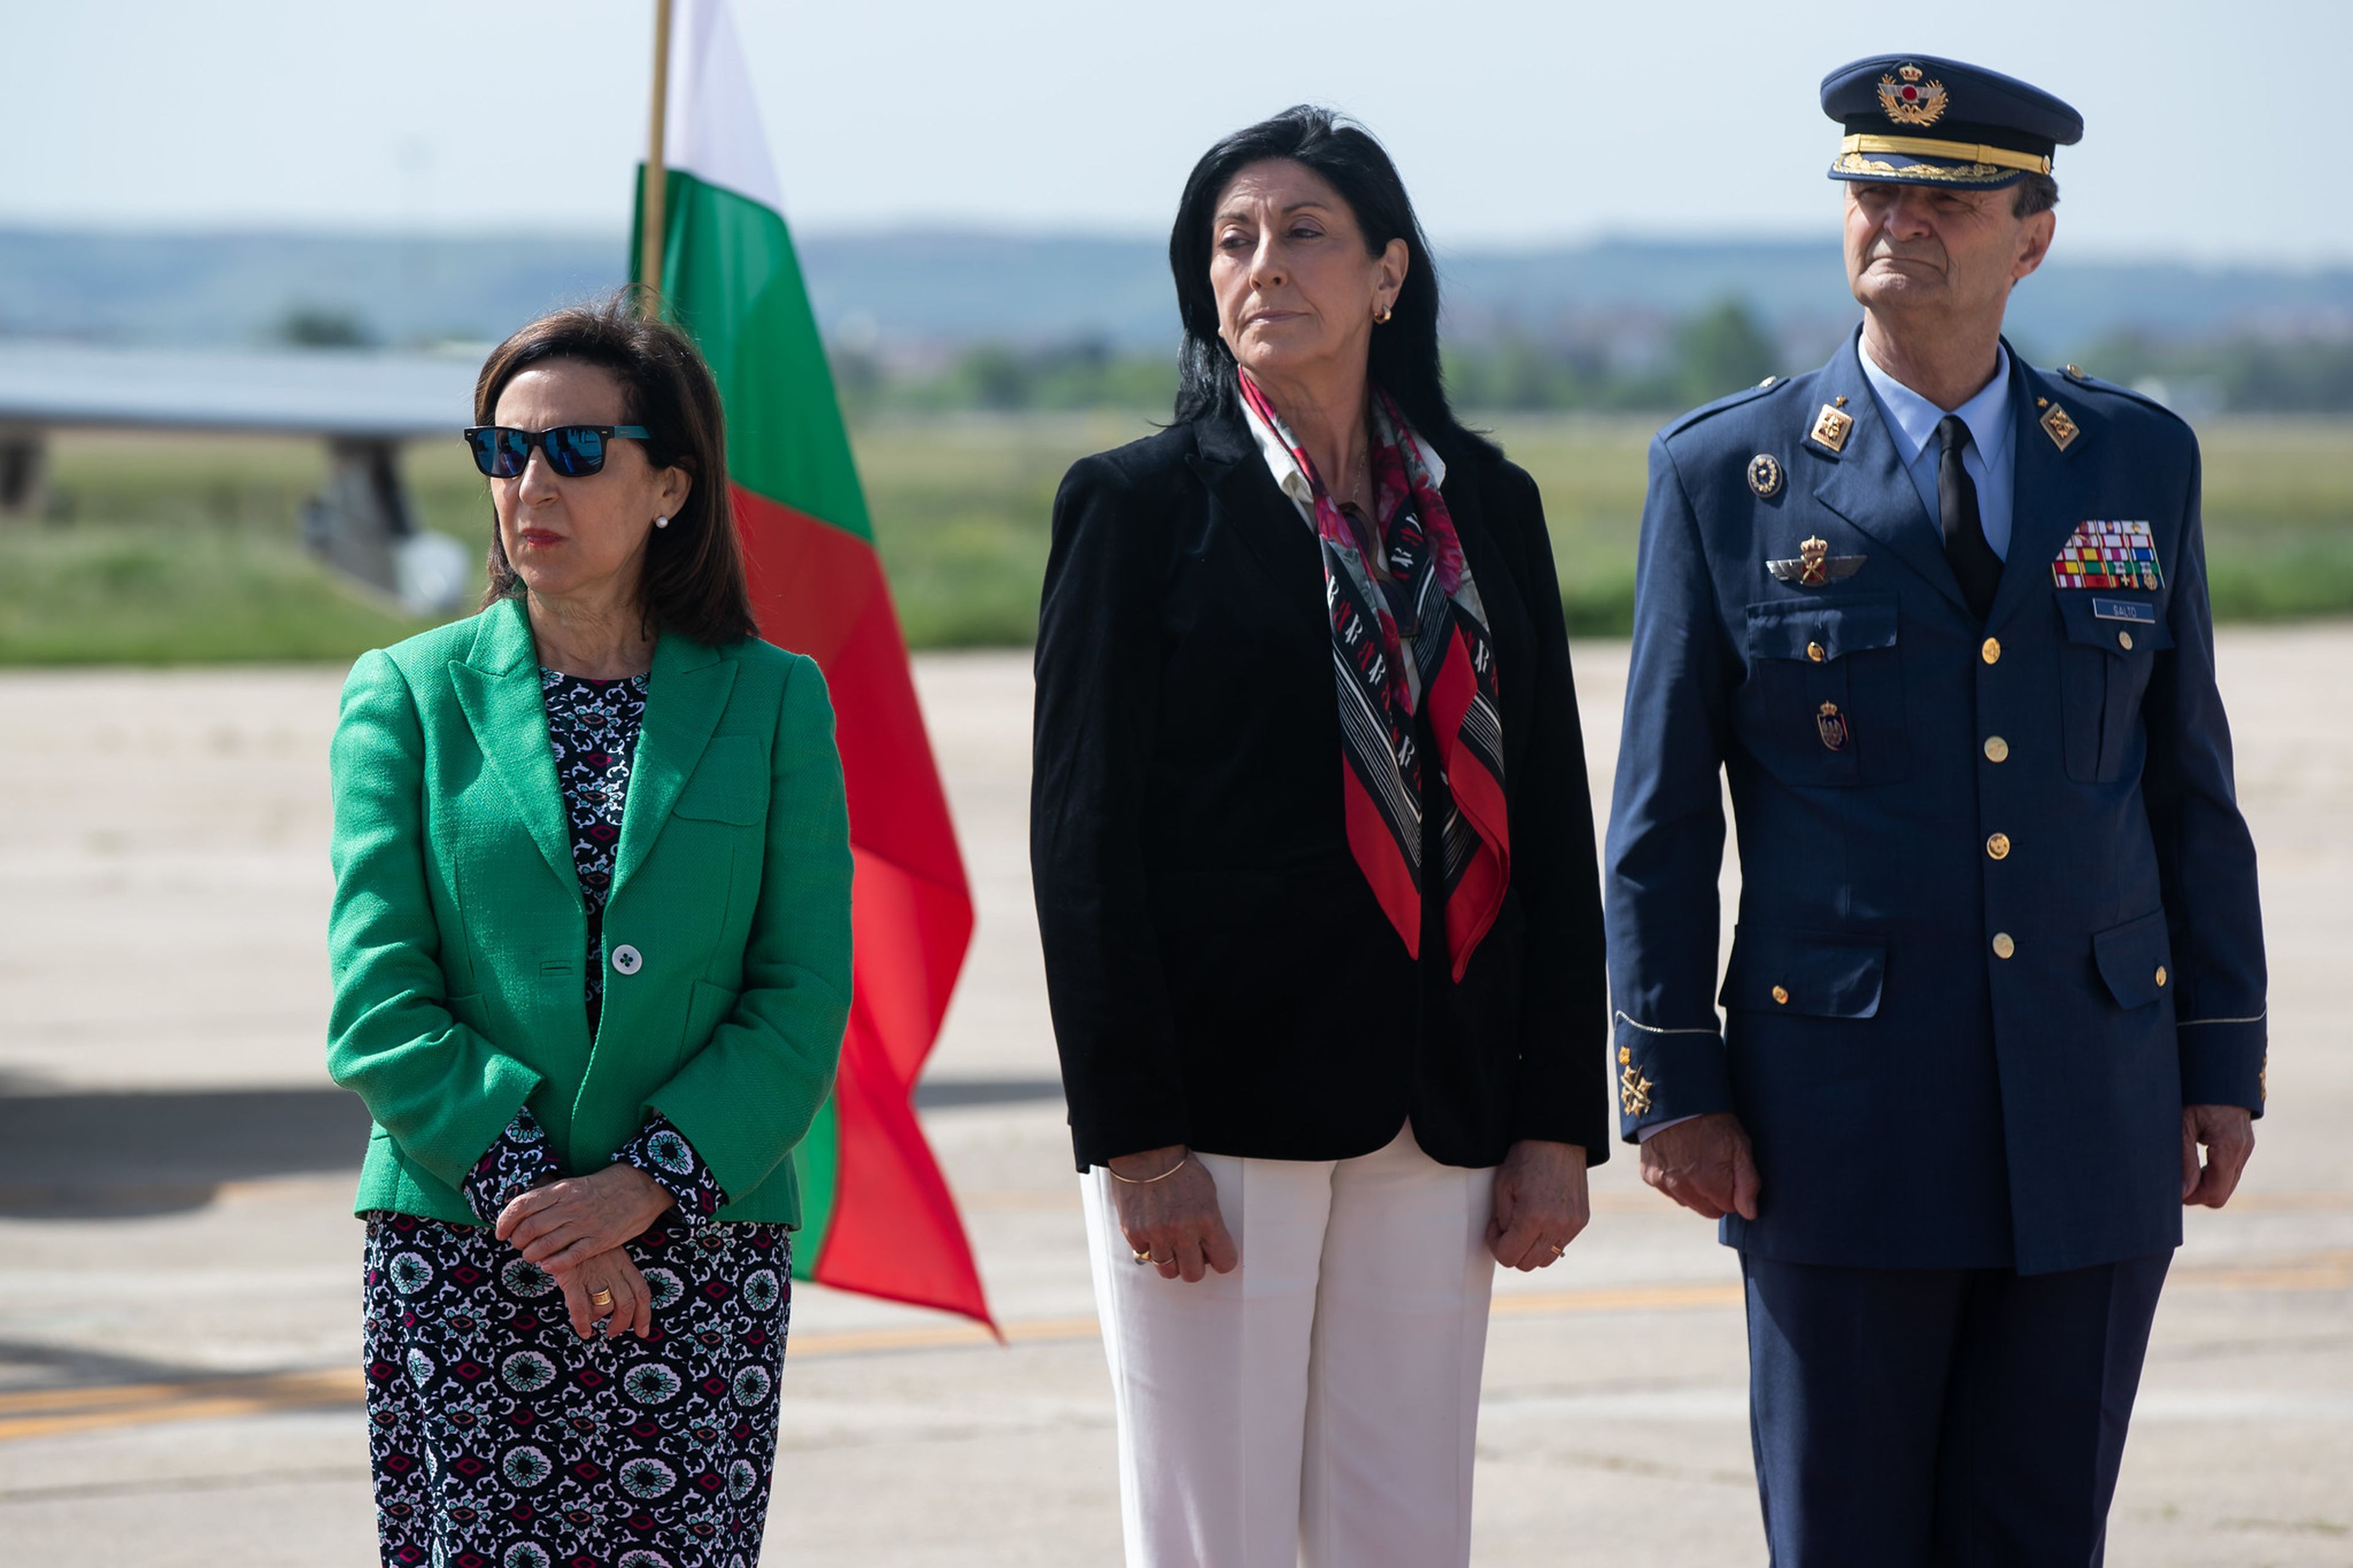 La ministra de Defensa, Margarita Robles, a la izquierda, con la nueva directora del CNI, Esperanza Casteleiro, en el centro.